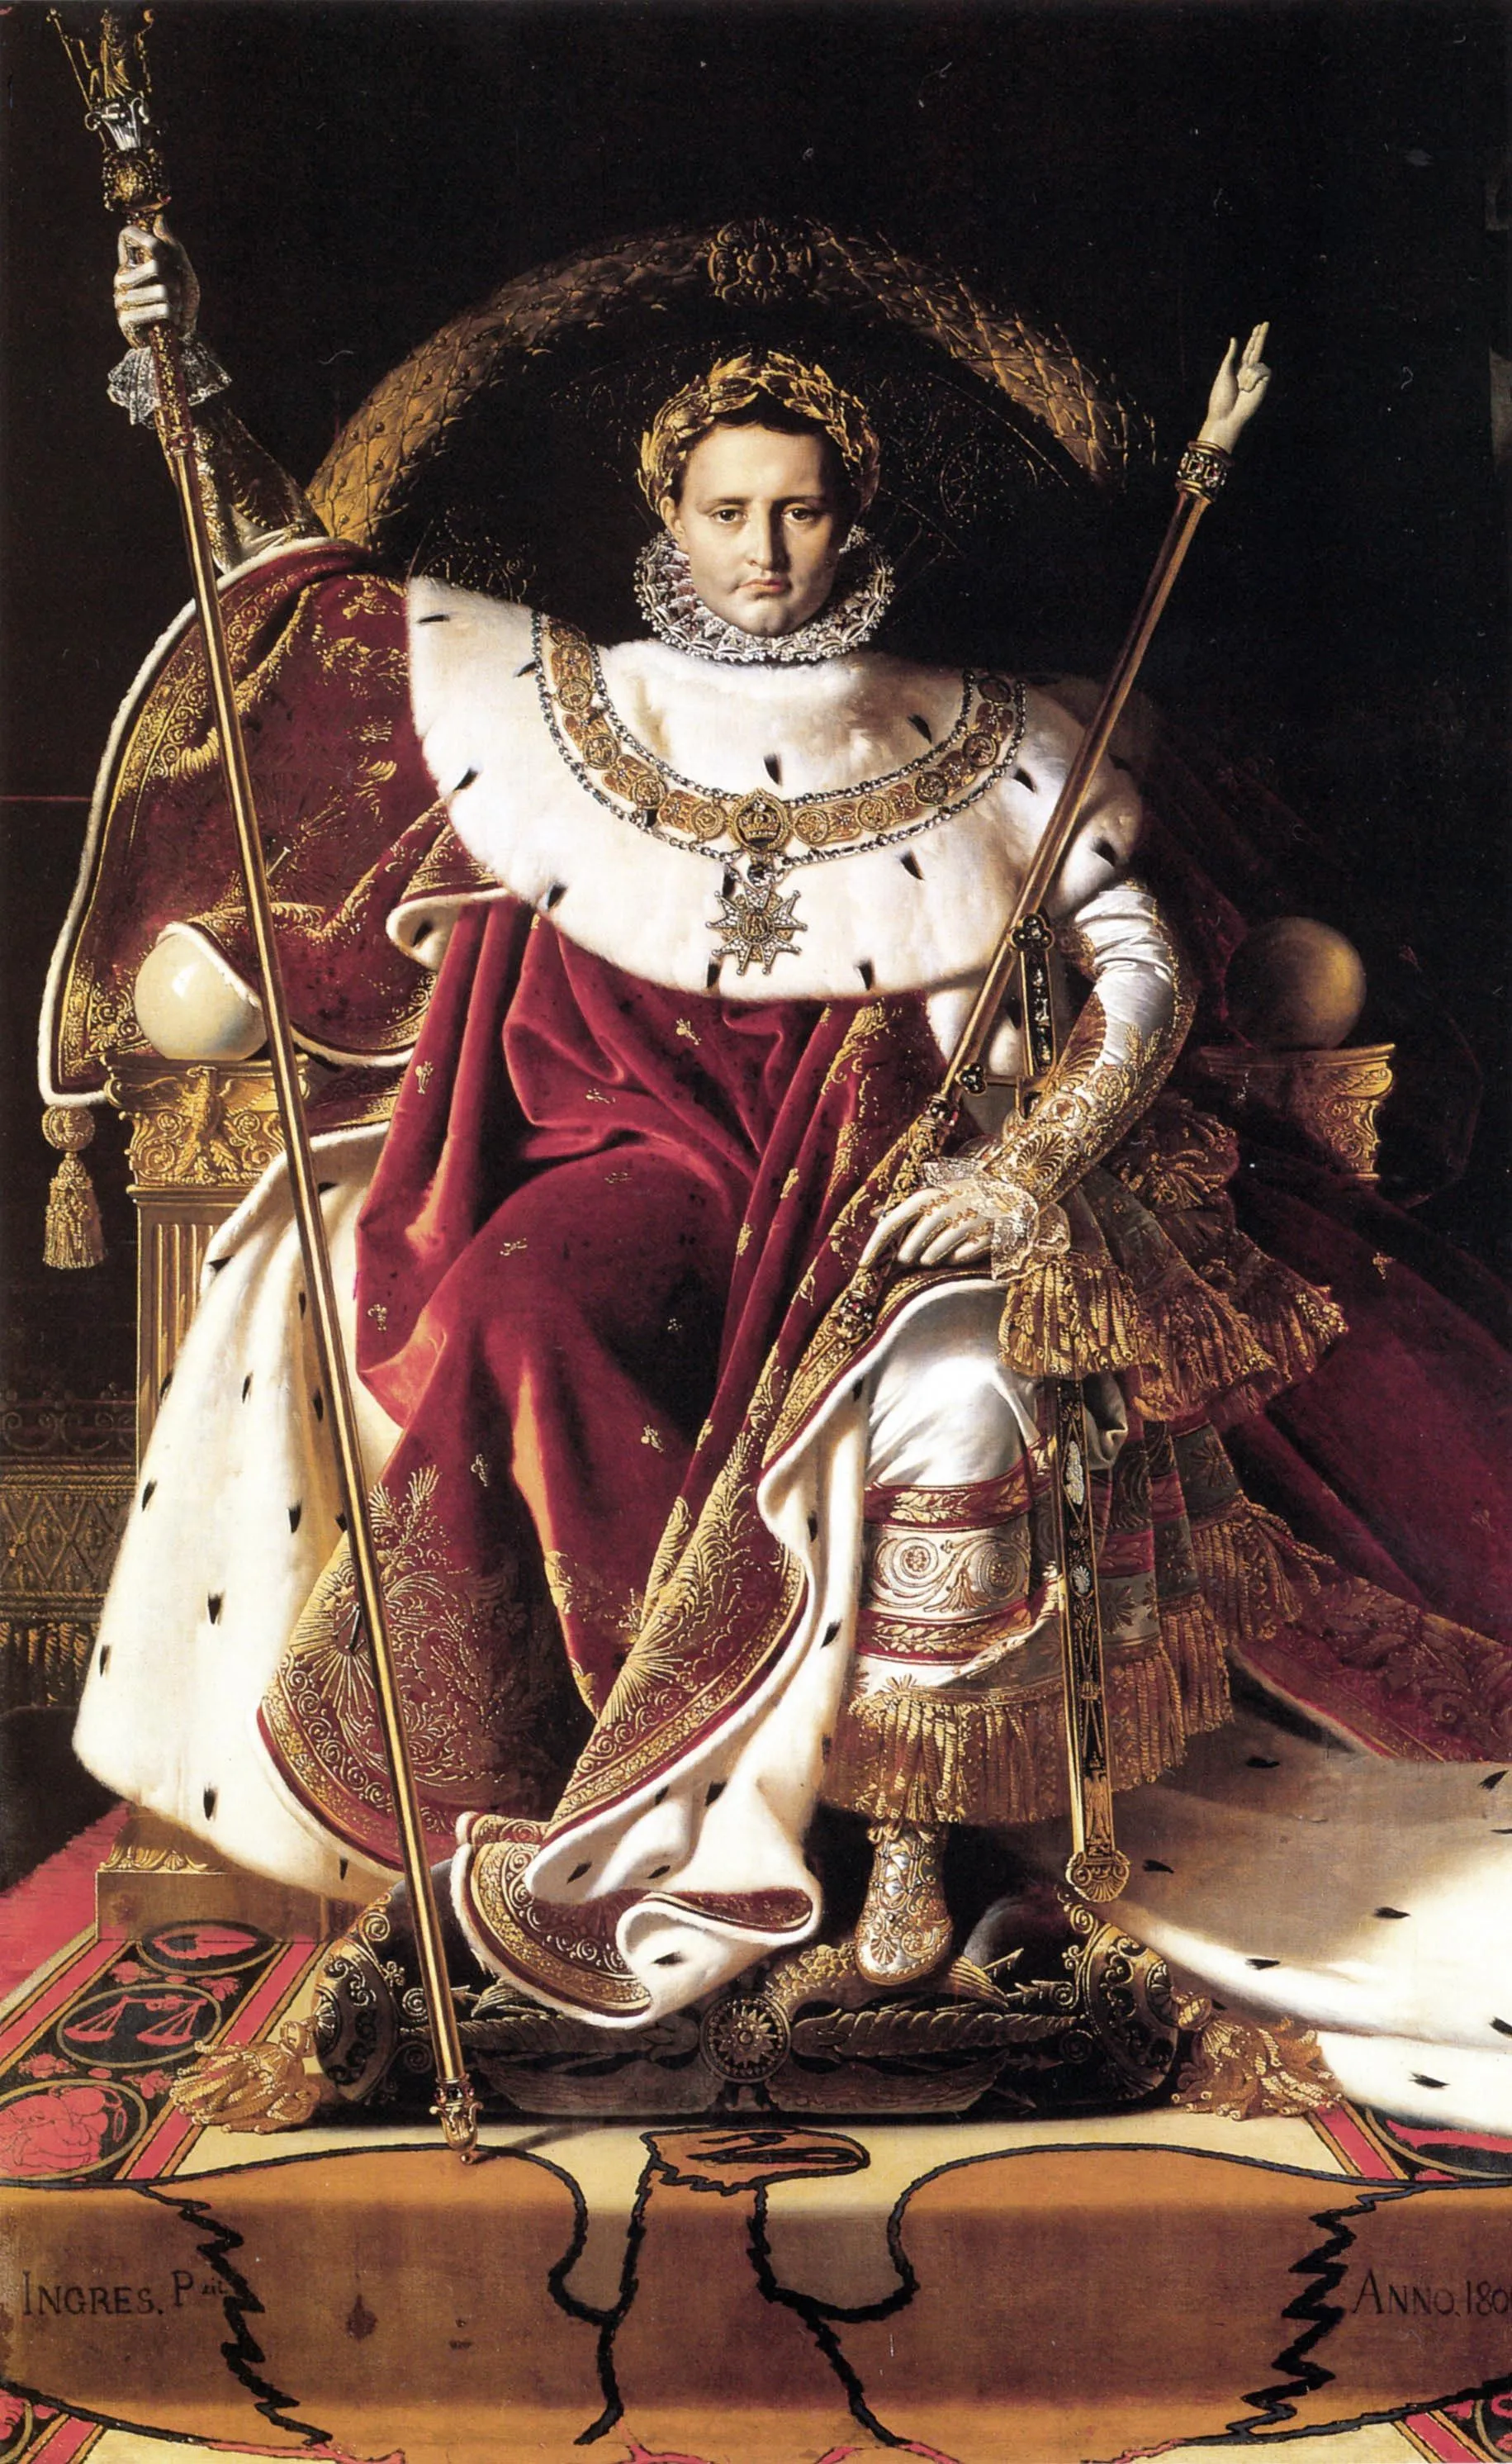 Ingres, Napoléon Ier sur le trône impérial en costume de sacre, 1806